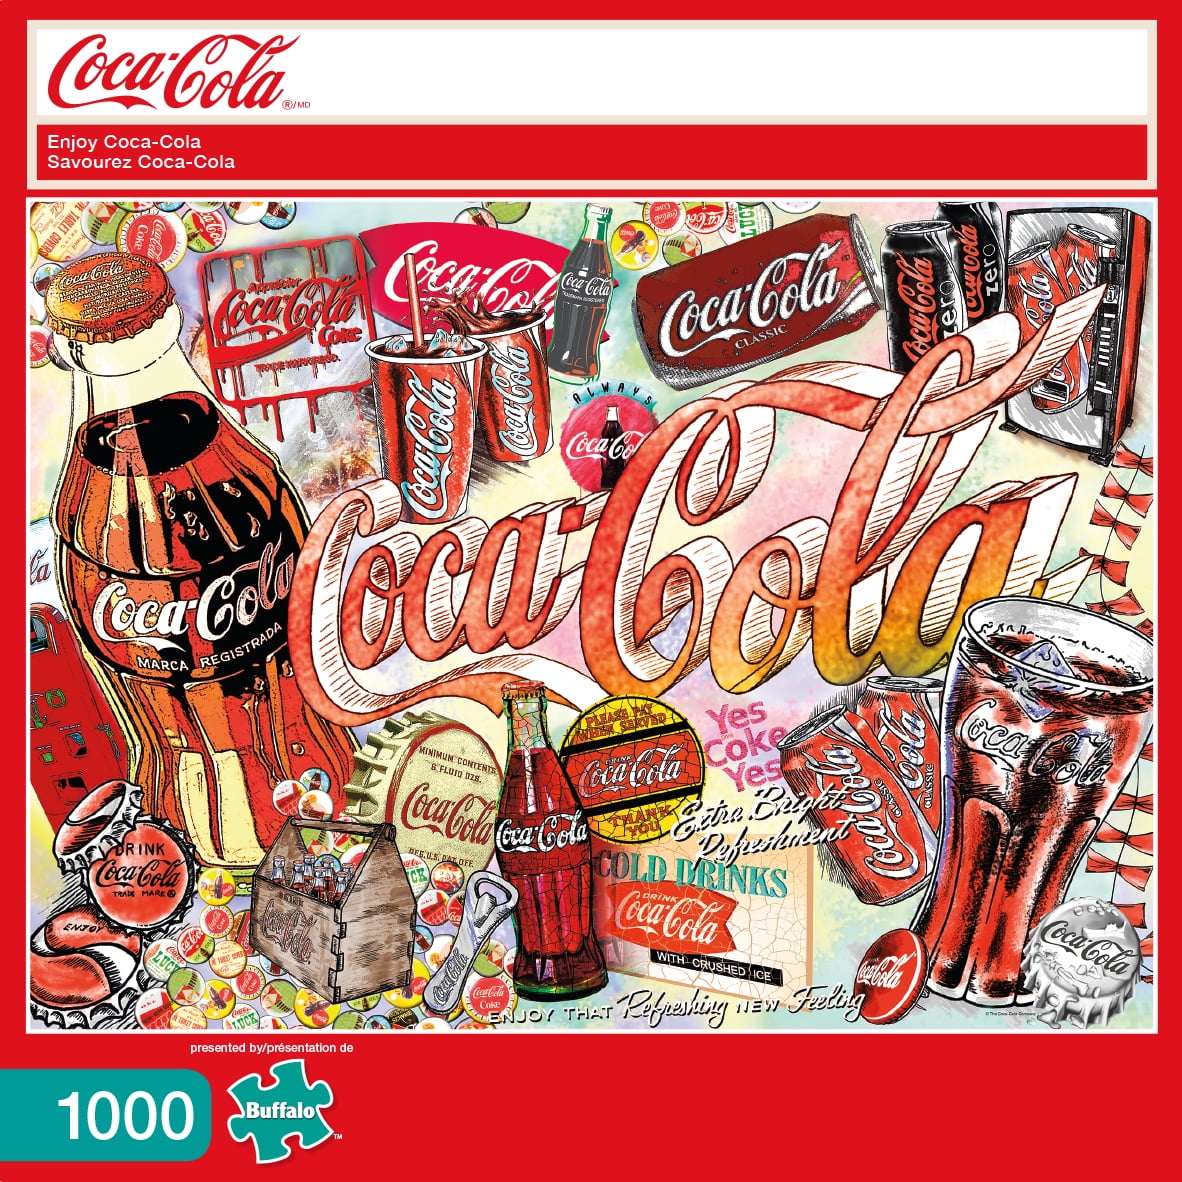 eterno En el piso Ejercicio mañanero Buffalo Games - Coca-Cola - Enjoy Coca-Cola - 1000 Piece Jigsaw Puzzle -  Walmart.com